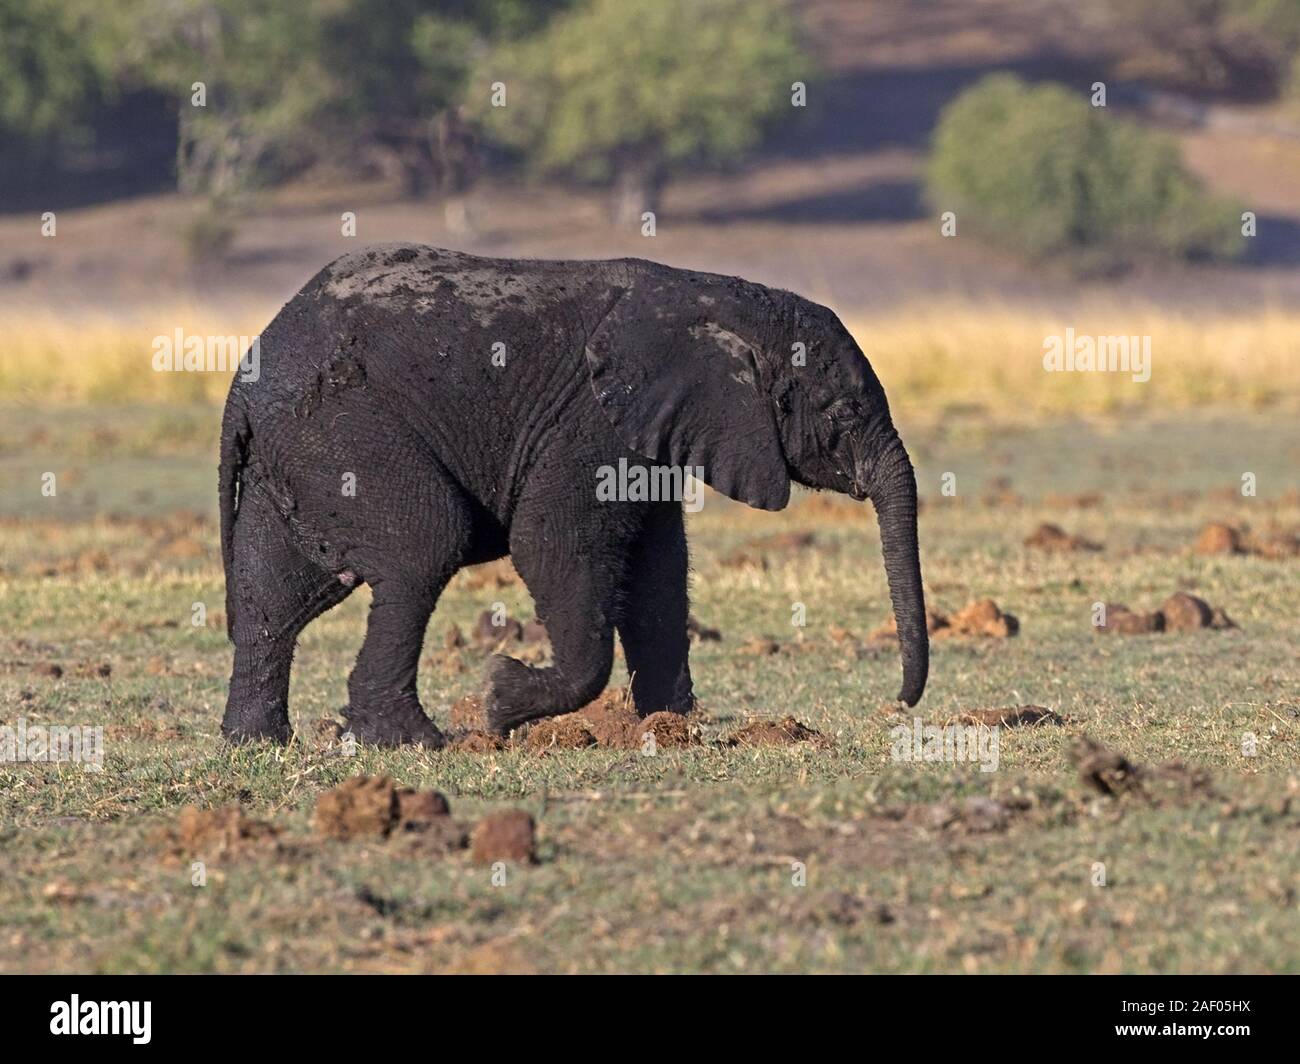 Macho de Elefante Africano arbusto caminar después del baño de barro Foto de stock